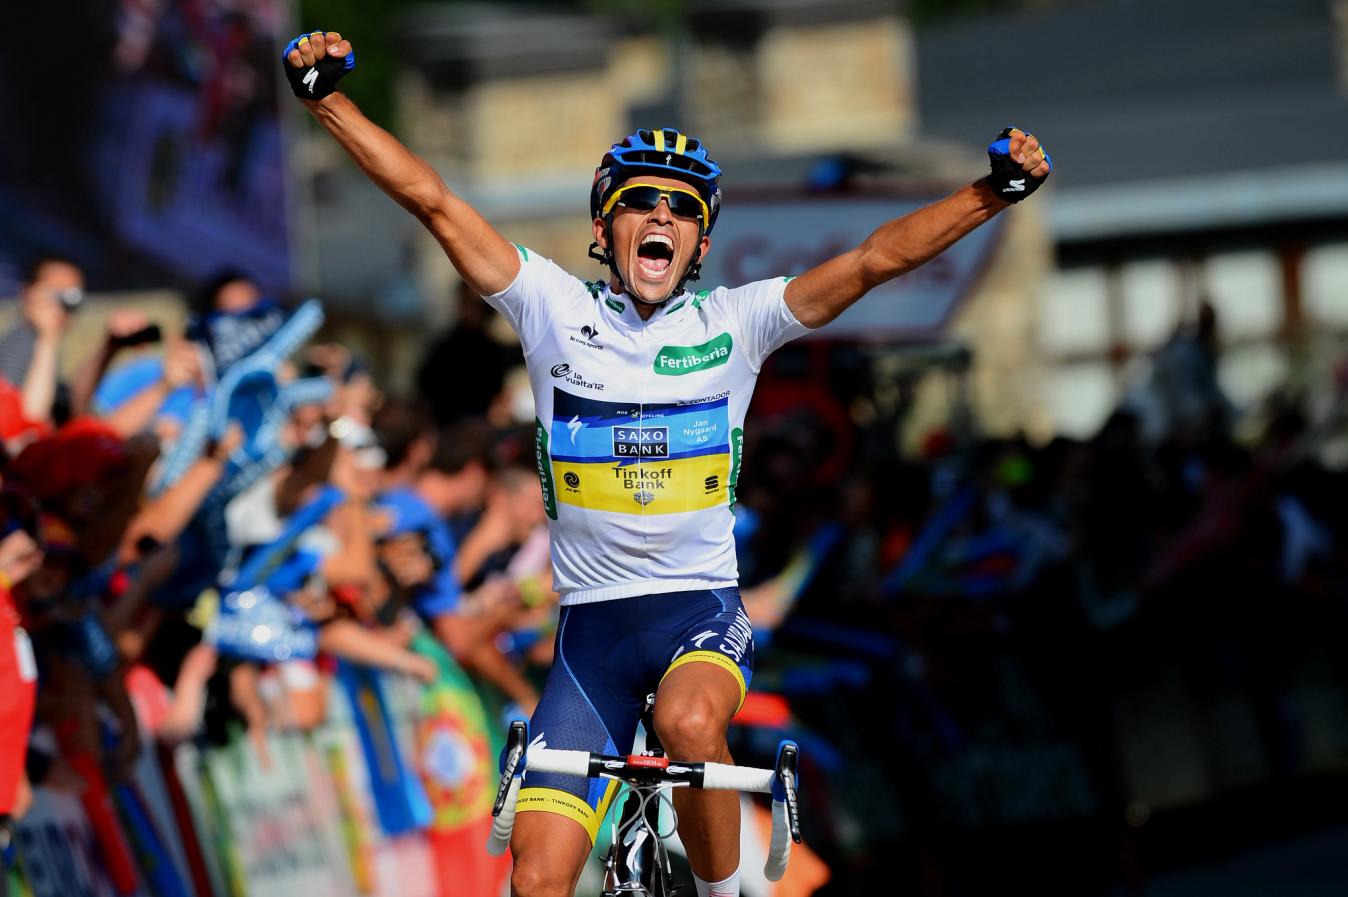 Contador went into the Vuelta a España race lead with his win in Fuente Dé